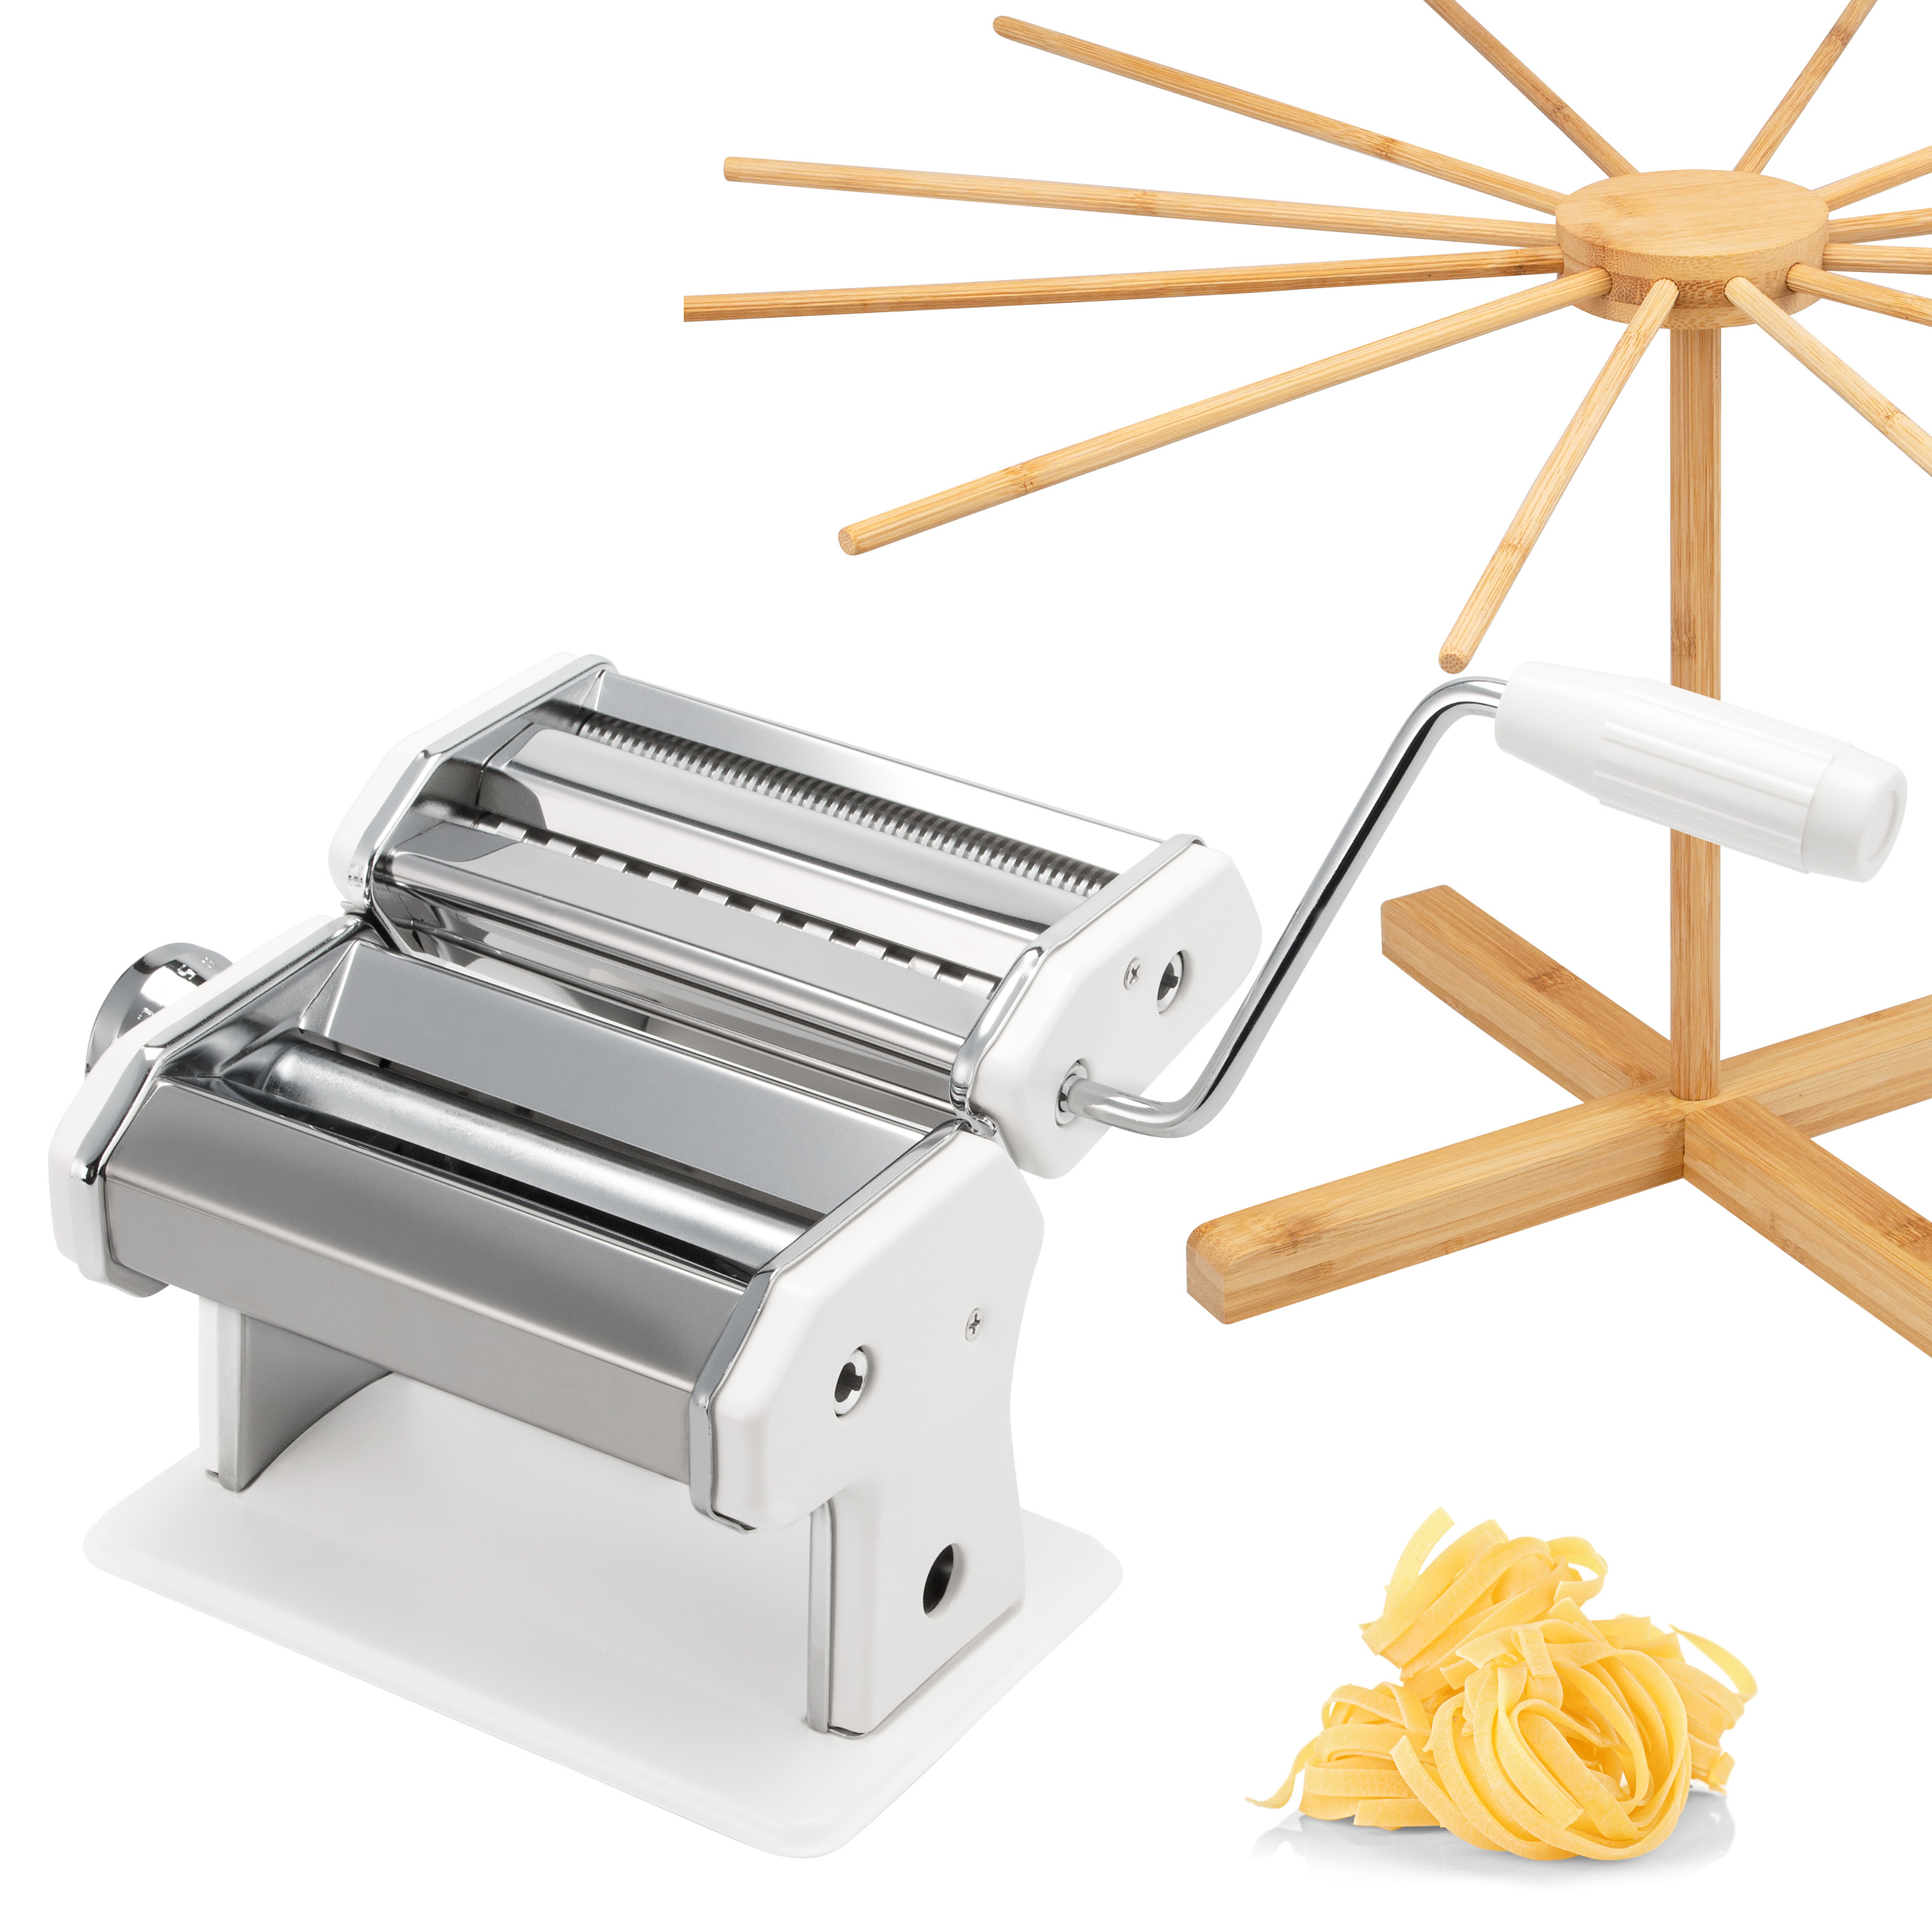 Nudelmaschine für Spaghetti, Pasta und Lasagne inkl. Nudeltrocker aus Bambus als Set, weiß